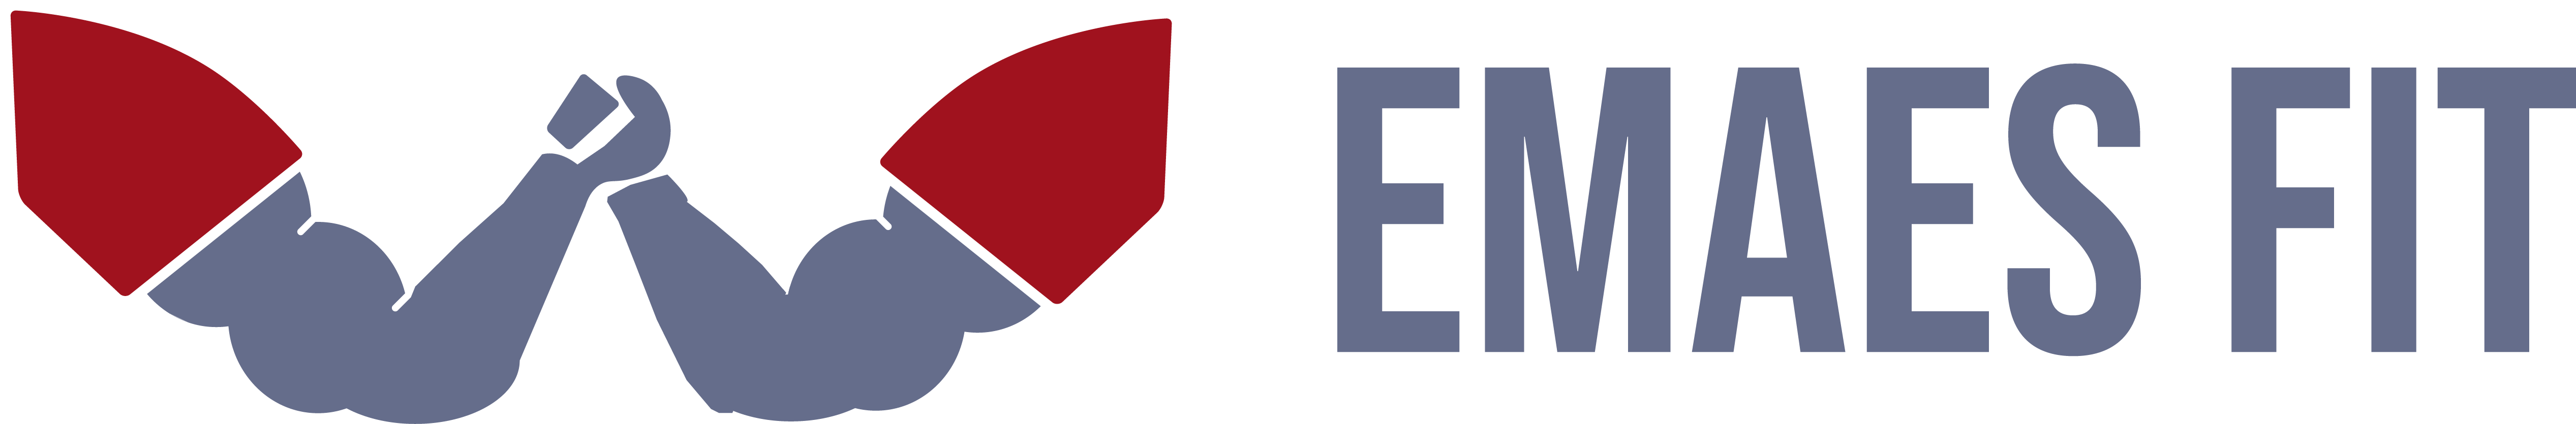 Emaes Fit logo